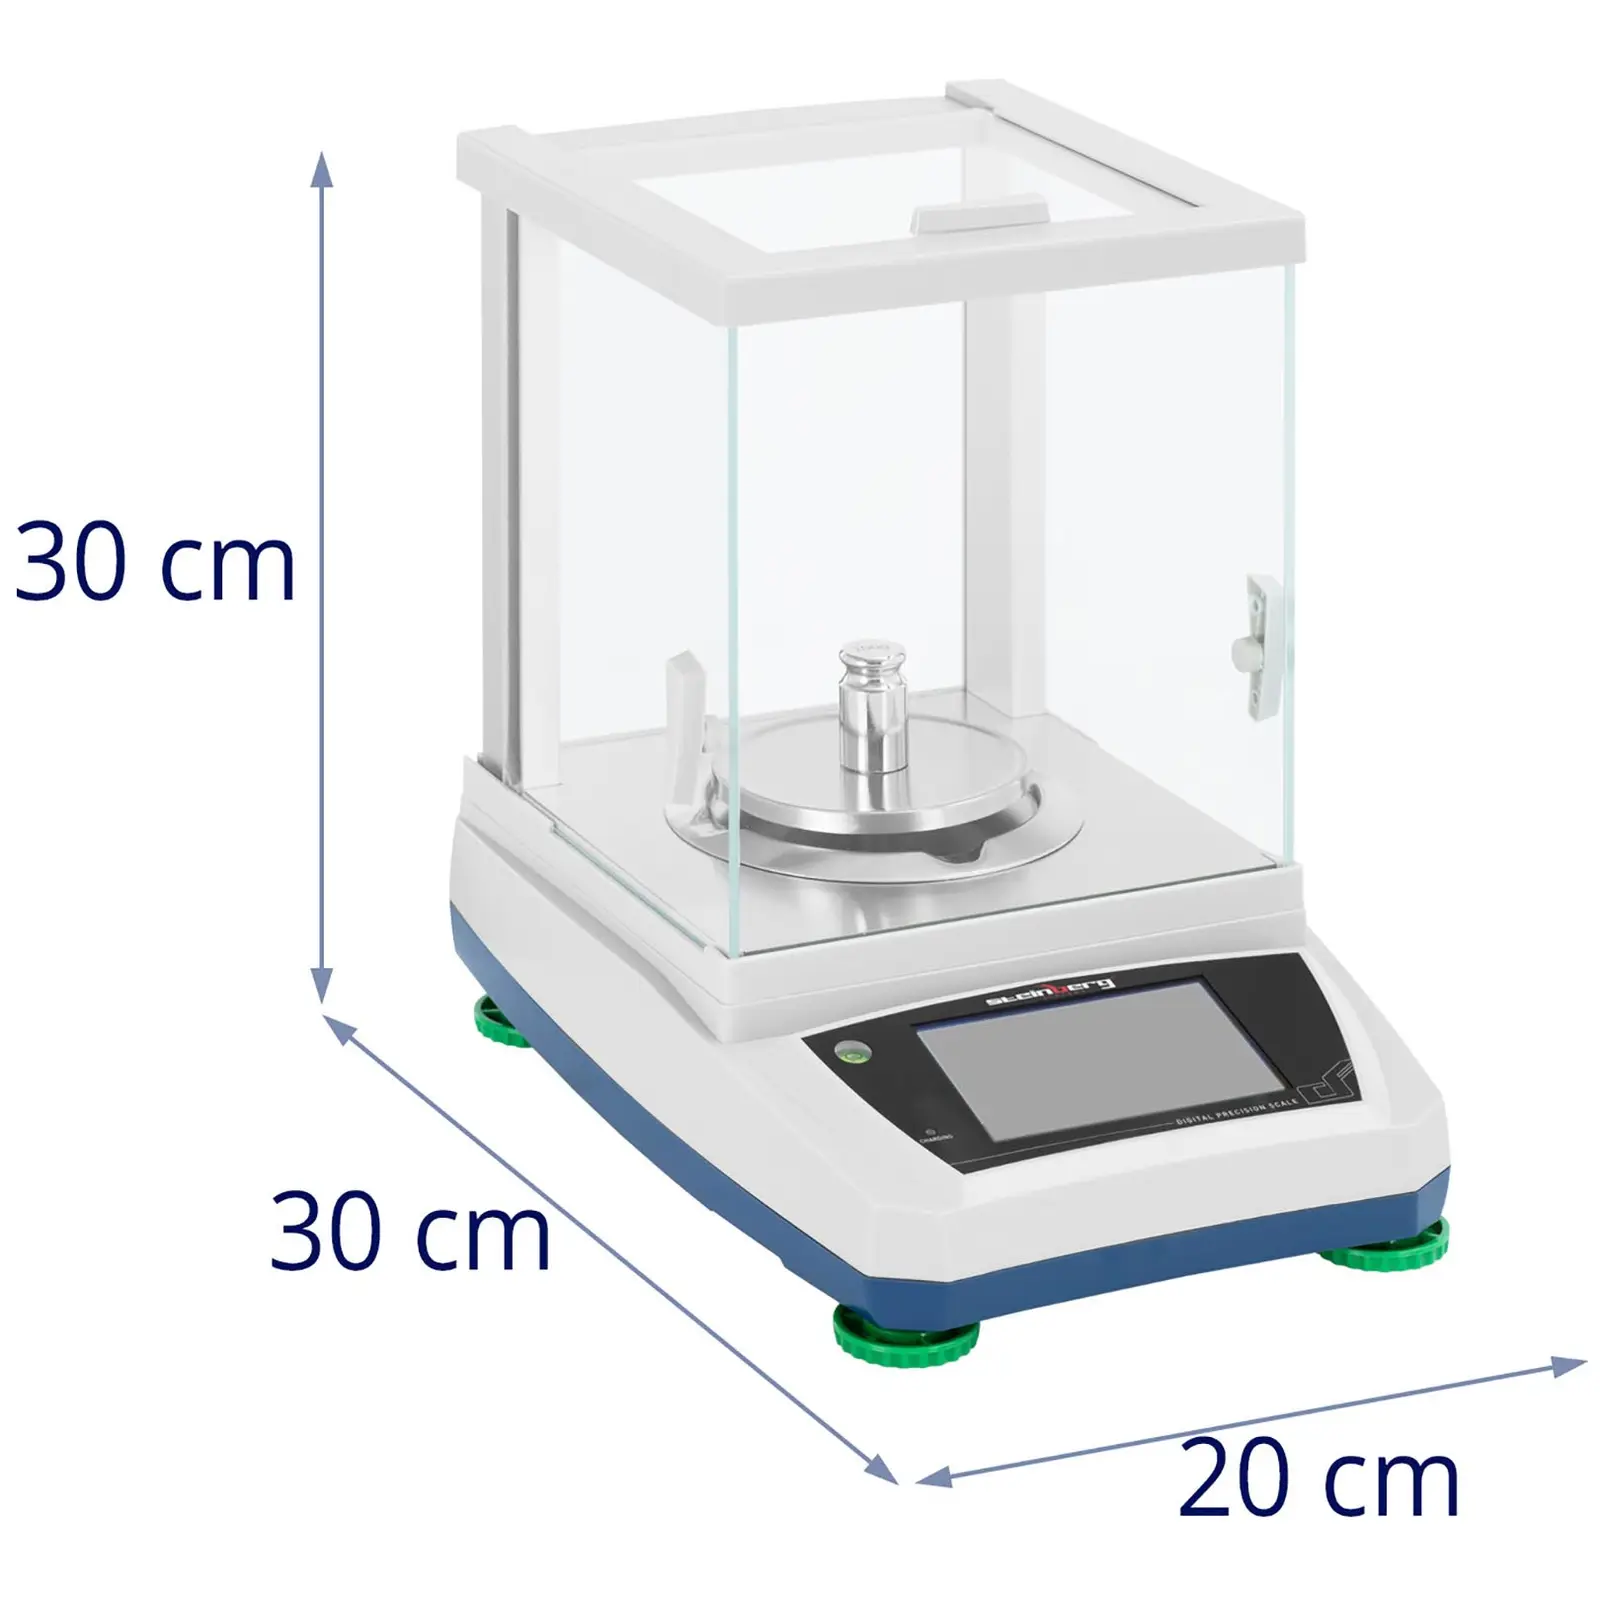 Waga laboratoryjna - 200 g / 0,001 g - Ø98 mm - dotykowy panel LCD - akumulator - szklana osłona przeciwpodmuchowa